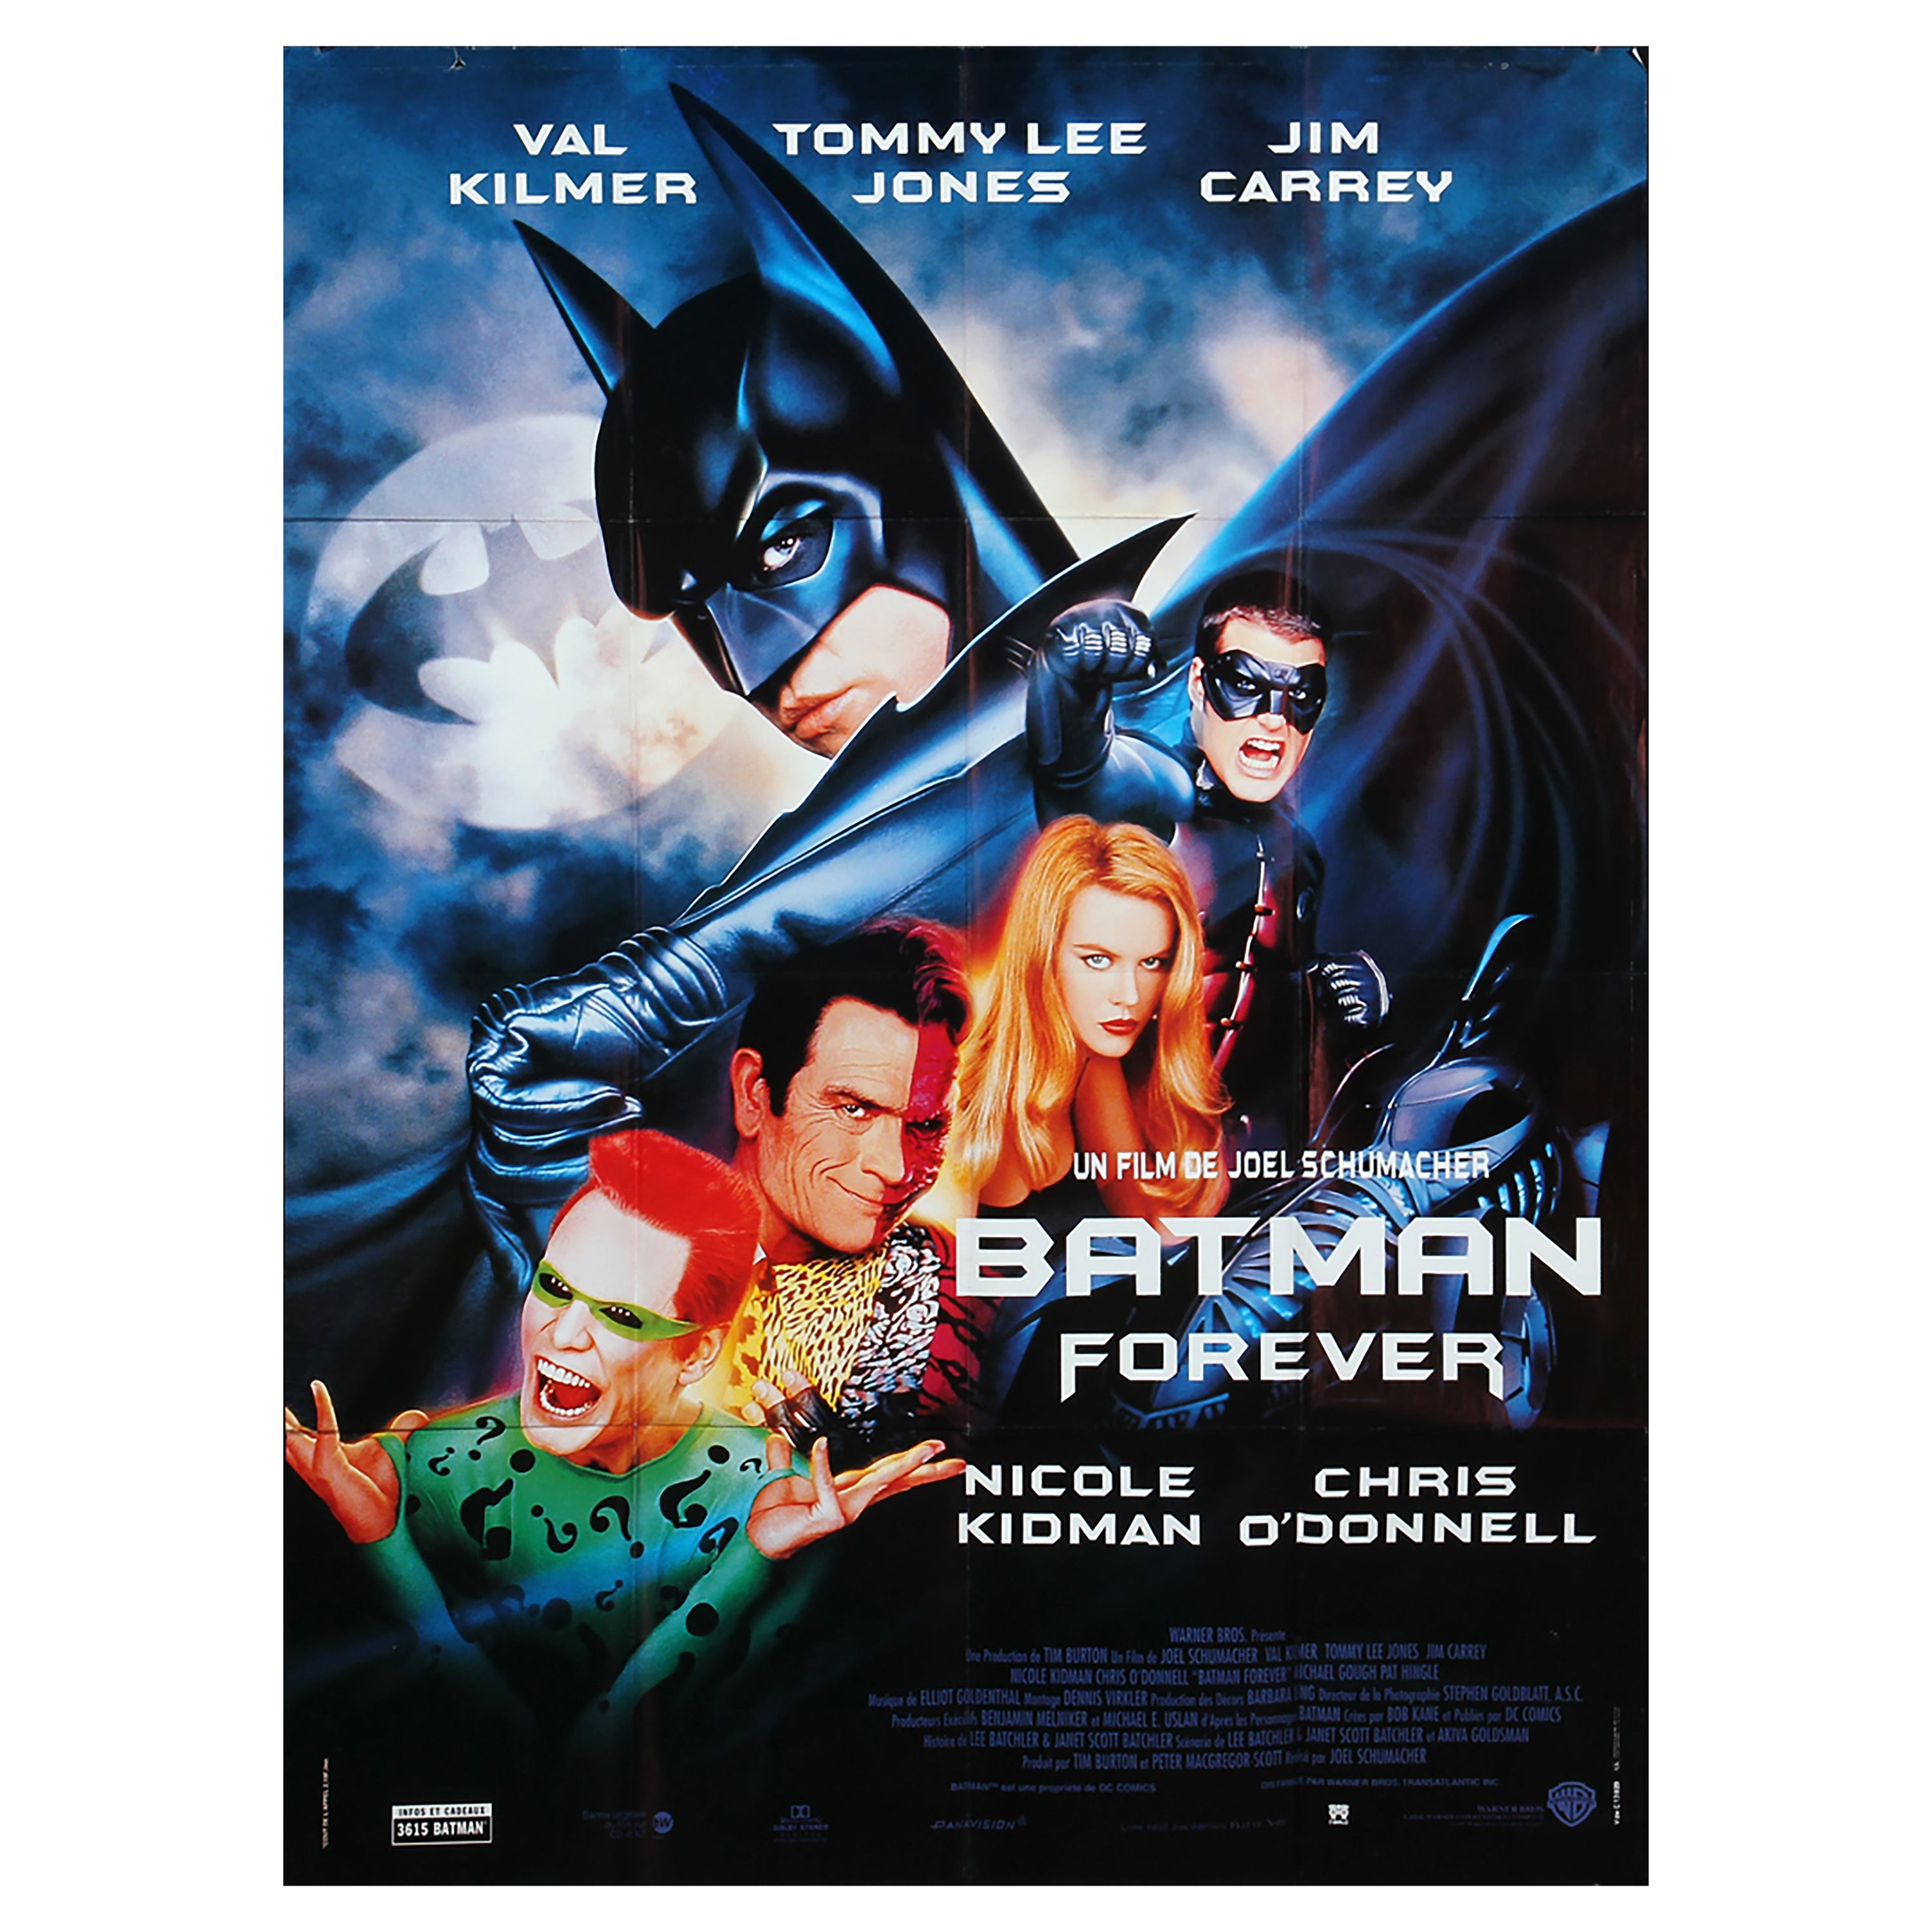 Film Poster "Batman Forever" from 1995